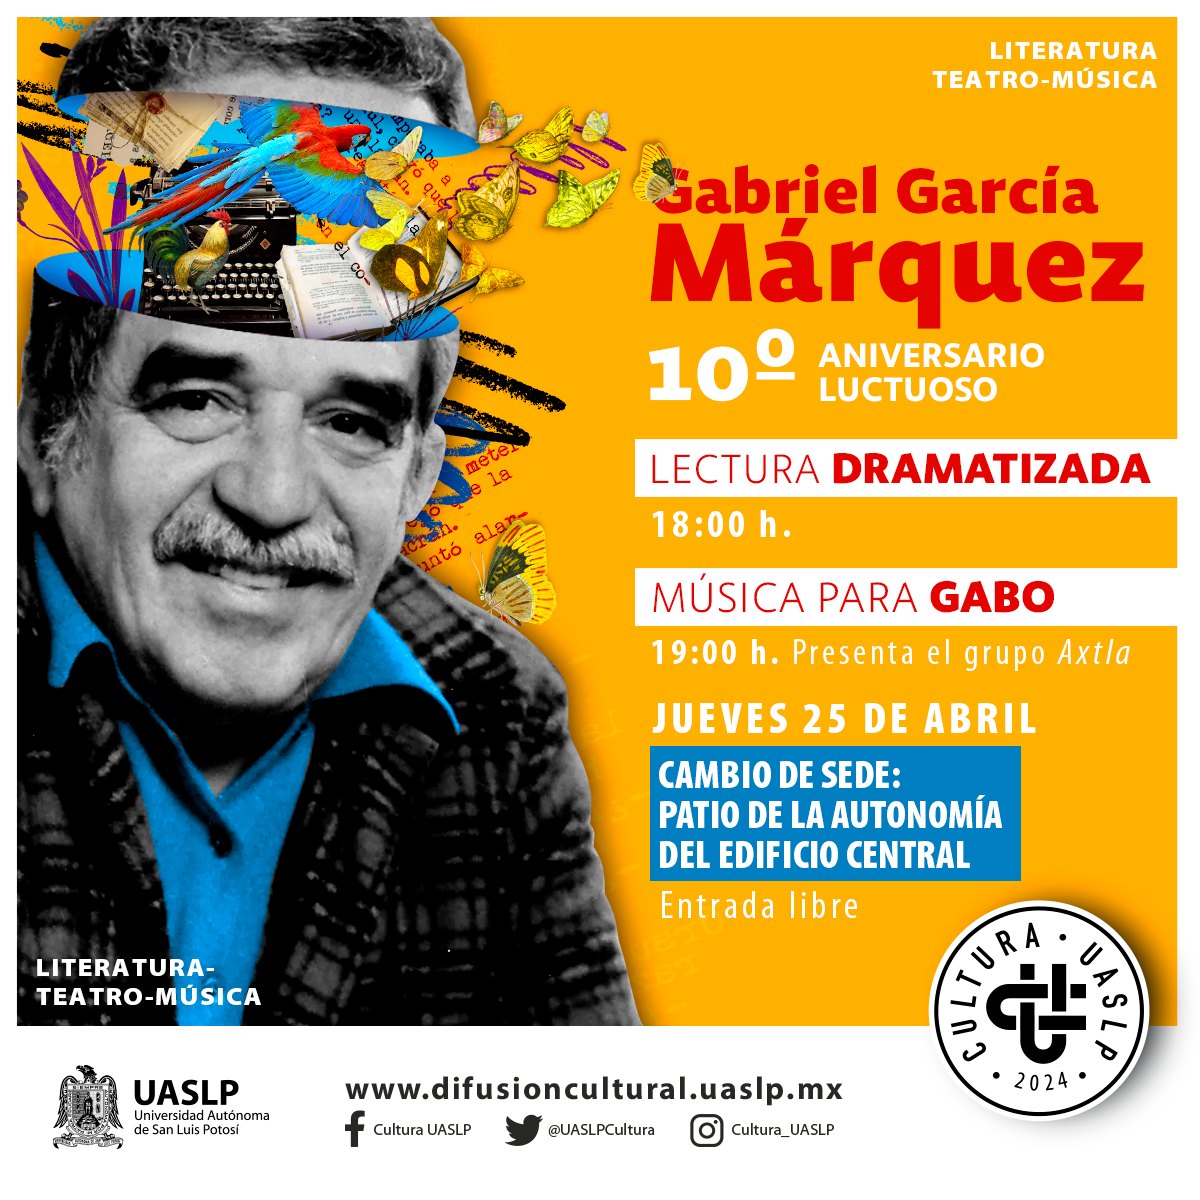 Todas y todos están invitados a un evento especial que combina la magia de la literatura y la música en honor a Gabriel García Márquez. 🦋✨ 📍Jueves 25 de abril, 18:00 hrs. Patio de la Autonomía del Edificio Central. Entrada libre. #UASLP